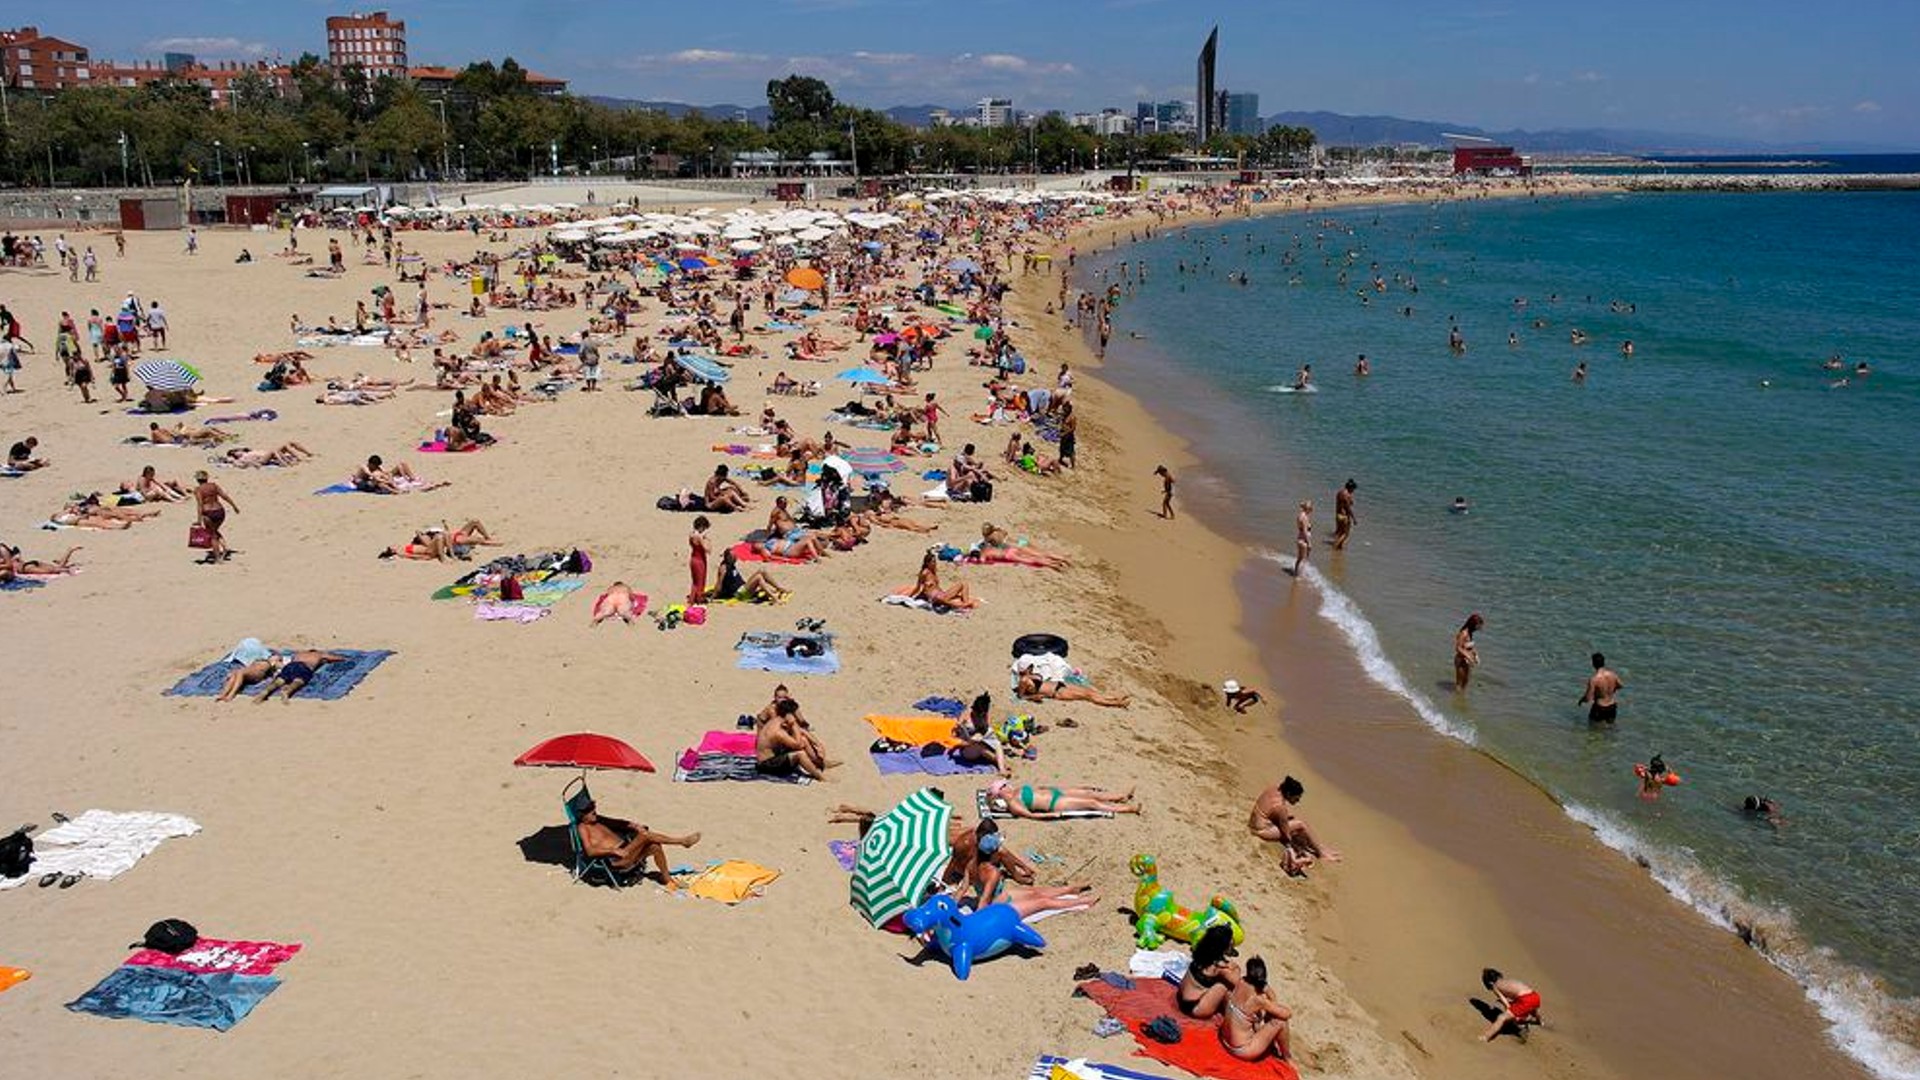 Estat platges Barcelona Catalunya temps real